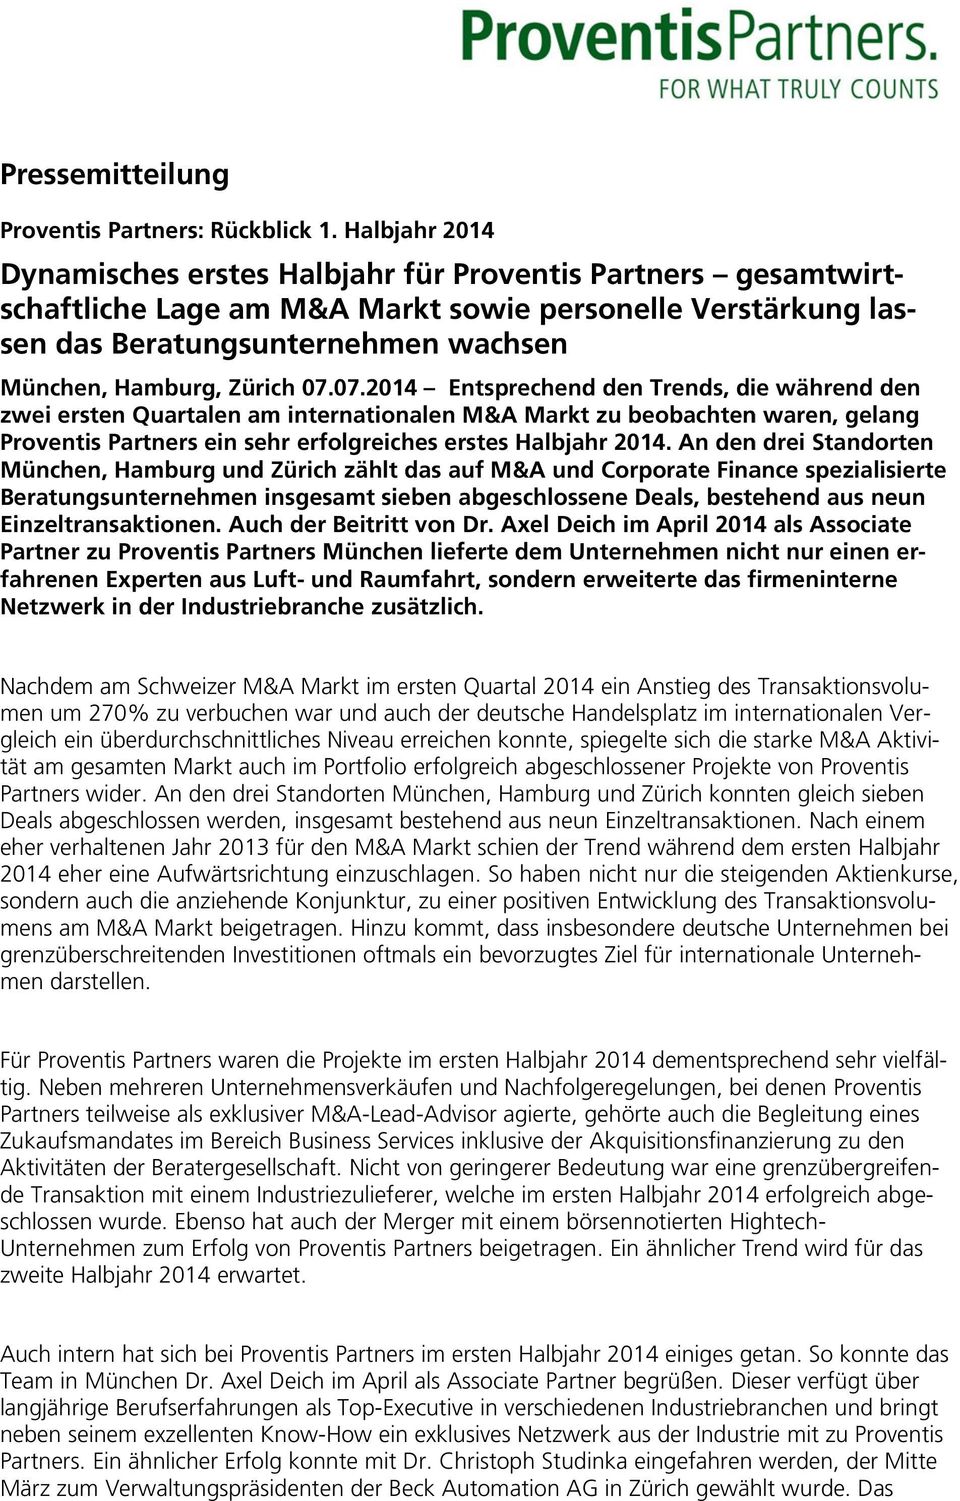 An den drei Standorten München, Hamburg und Zürich zählt das auf M&A und Corporate Finance spezialisierte Beratungsunternehmen insgesamt sieben abgeschlossene Deals, bestehend aus neun